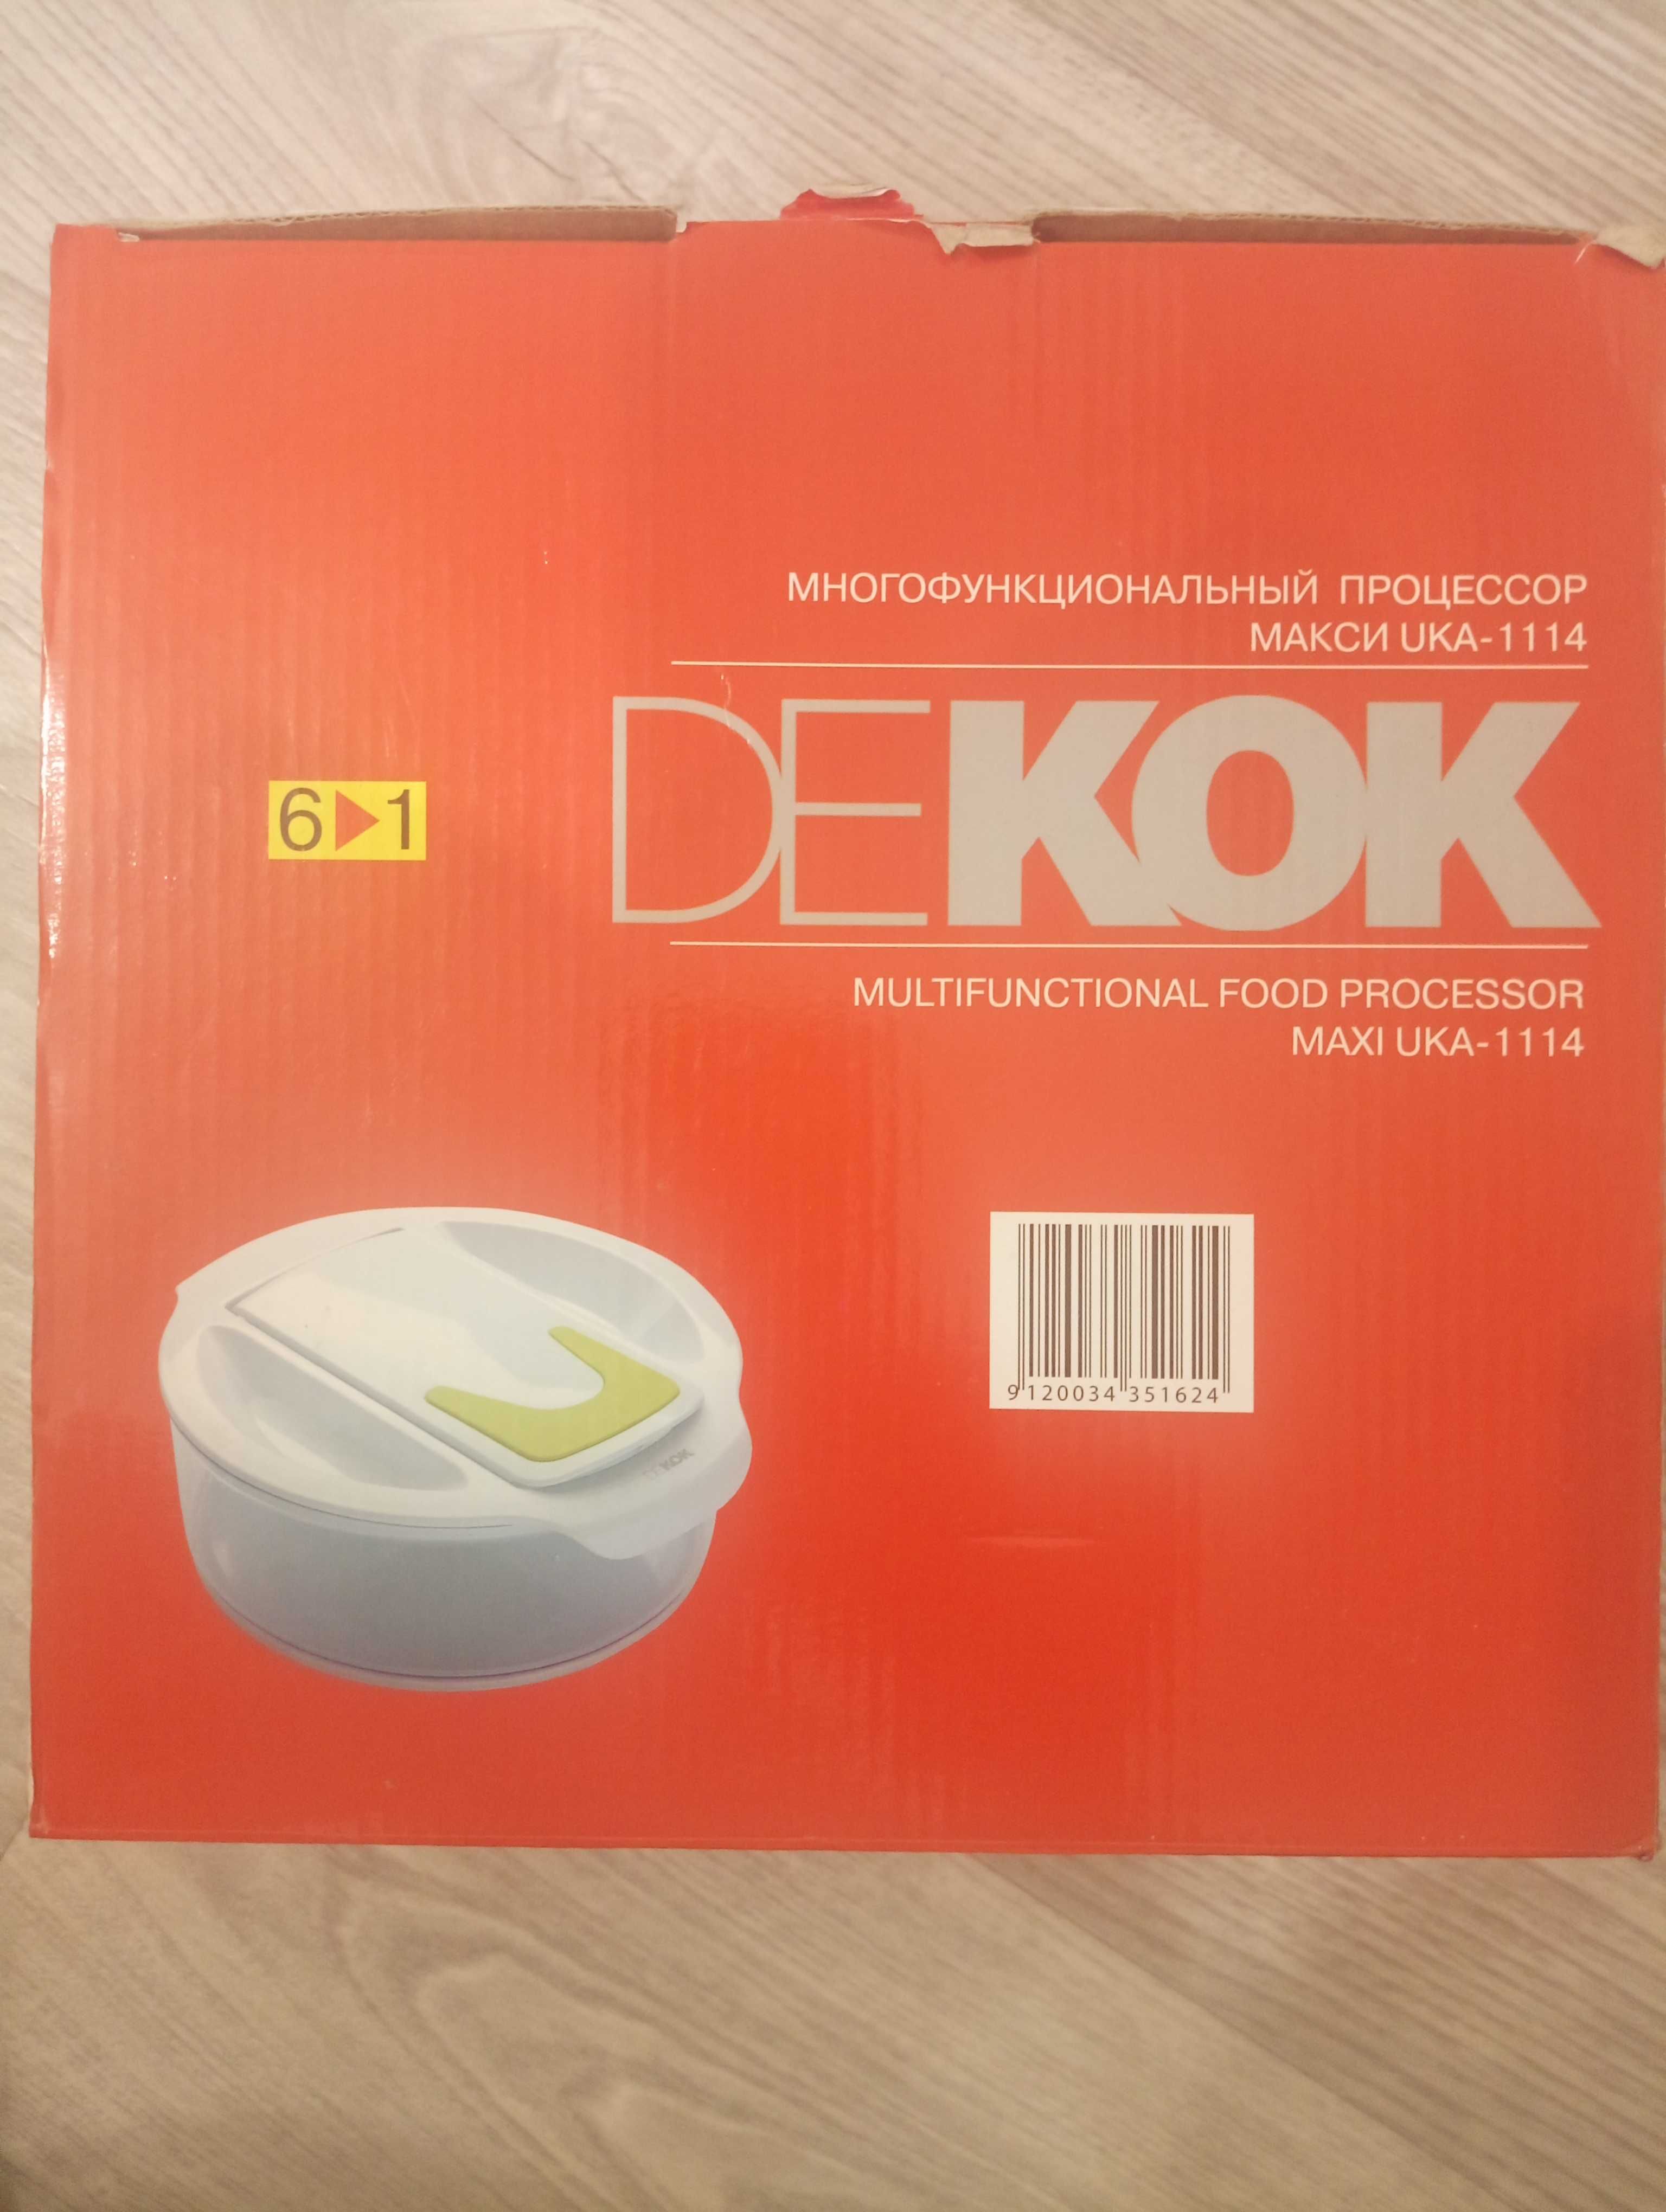 Многофункциональный набор терок DEKOK.